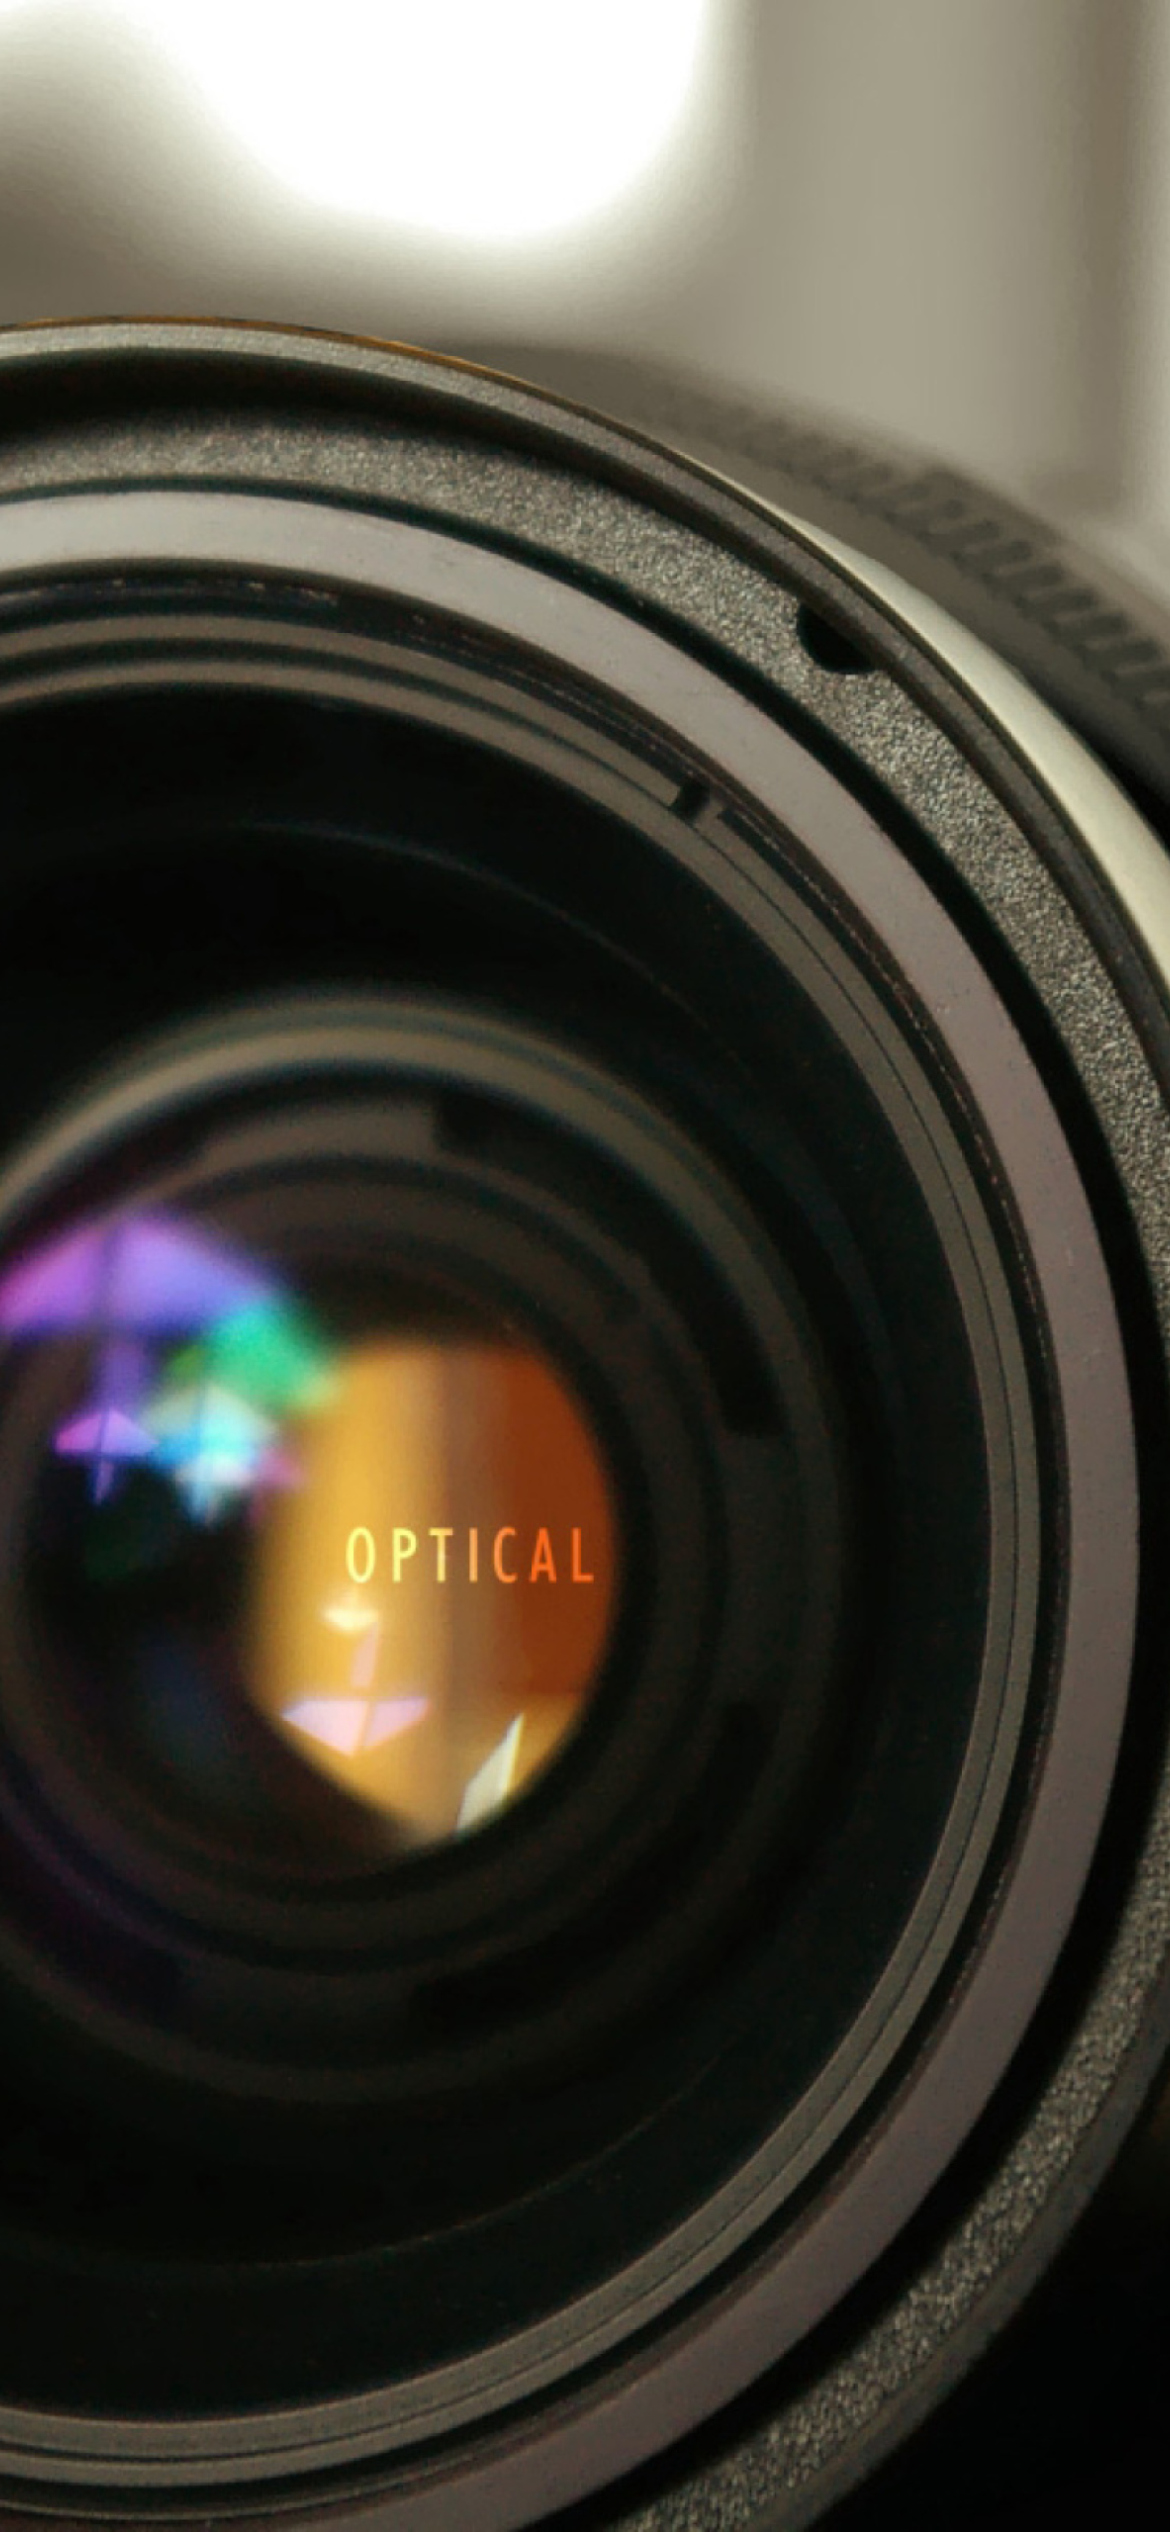 Sfondi Optical Lens 1170x2532